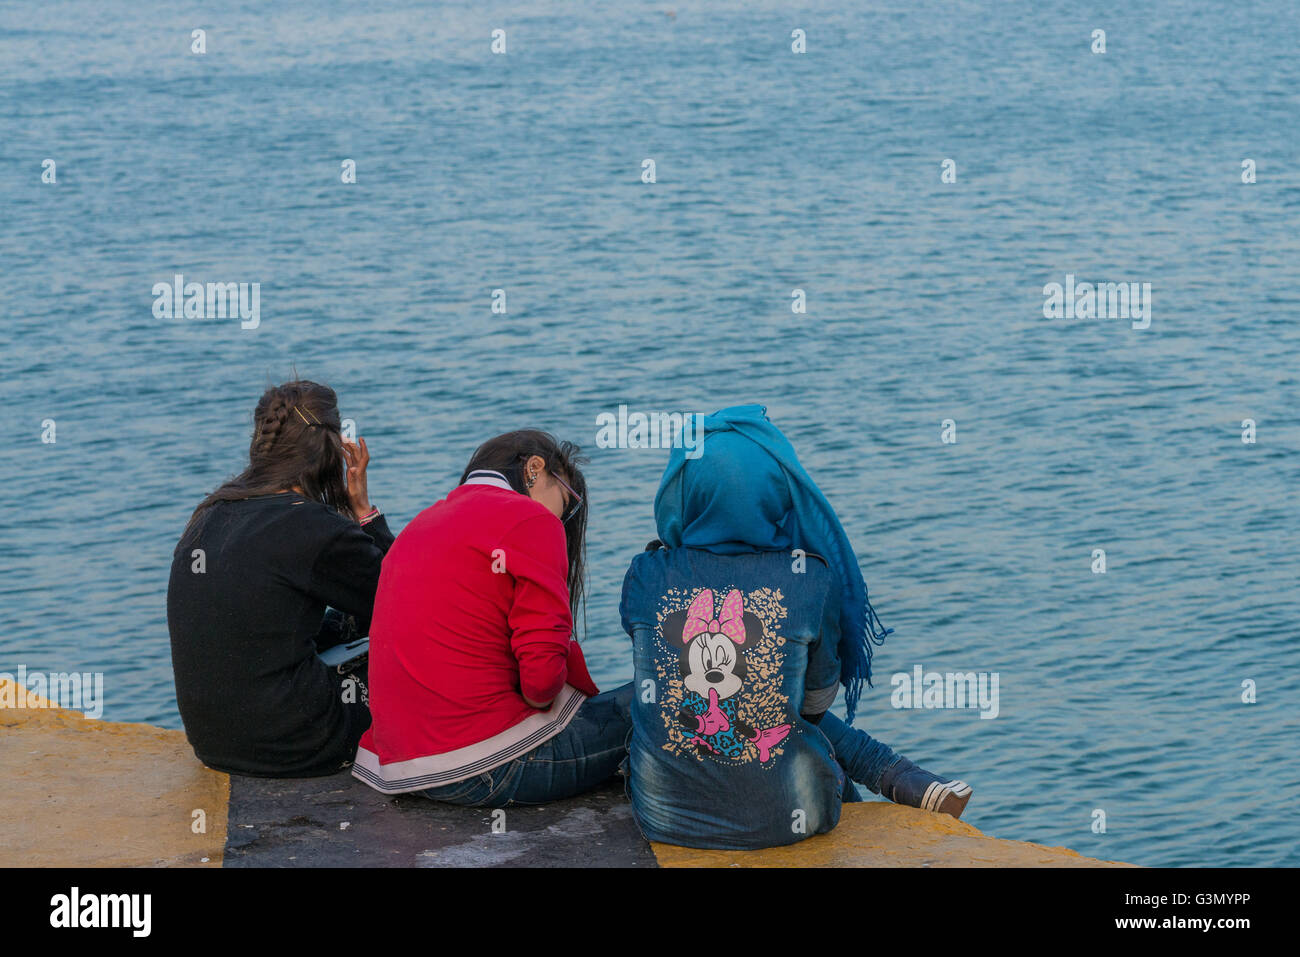 Grecia: refugiados que viven día a día en el campamento al Pireo Foto de stock